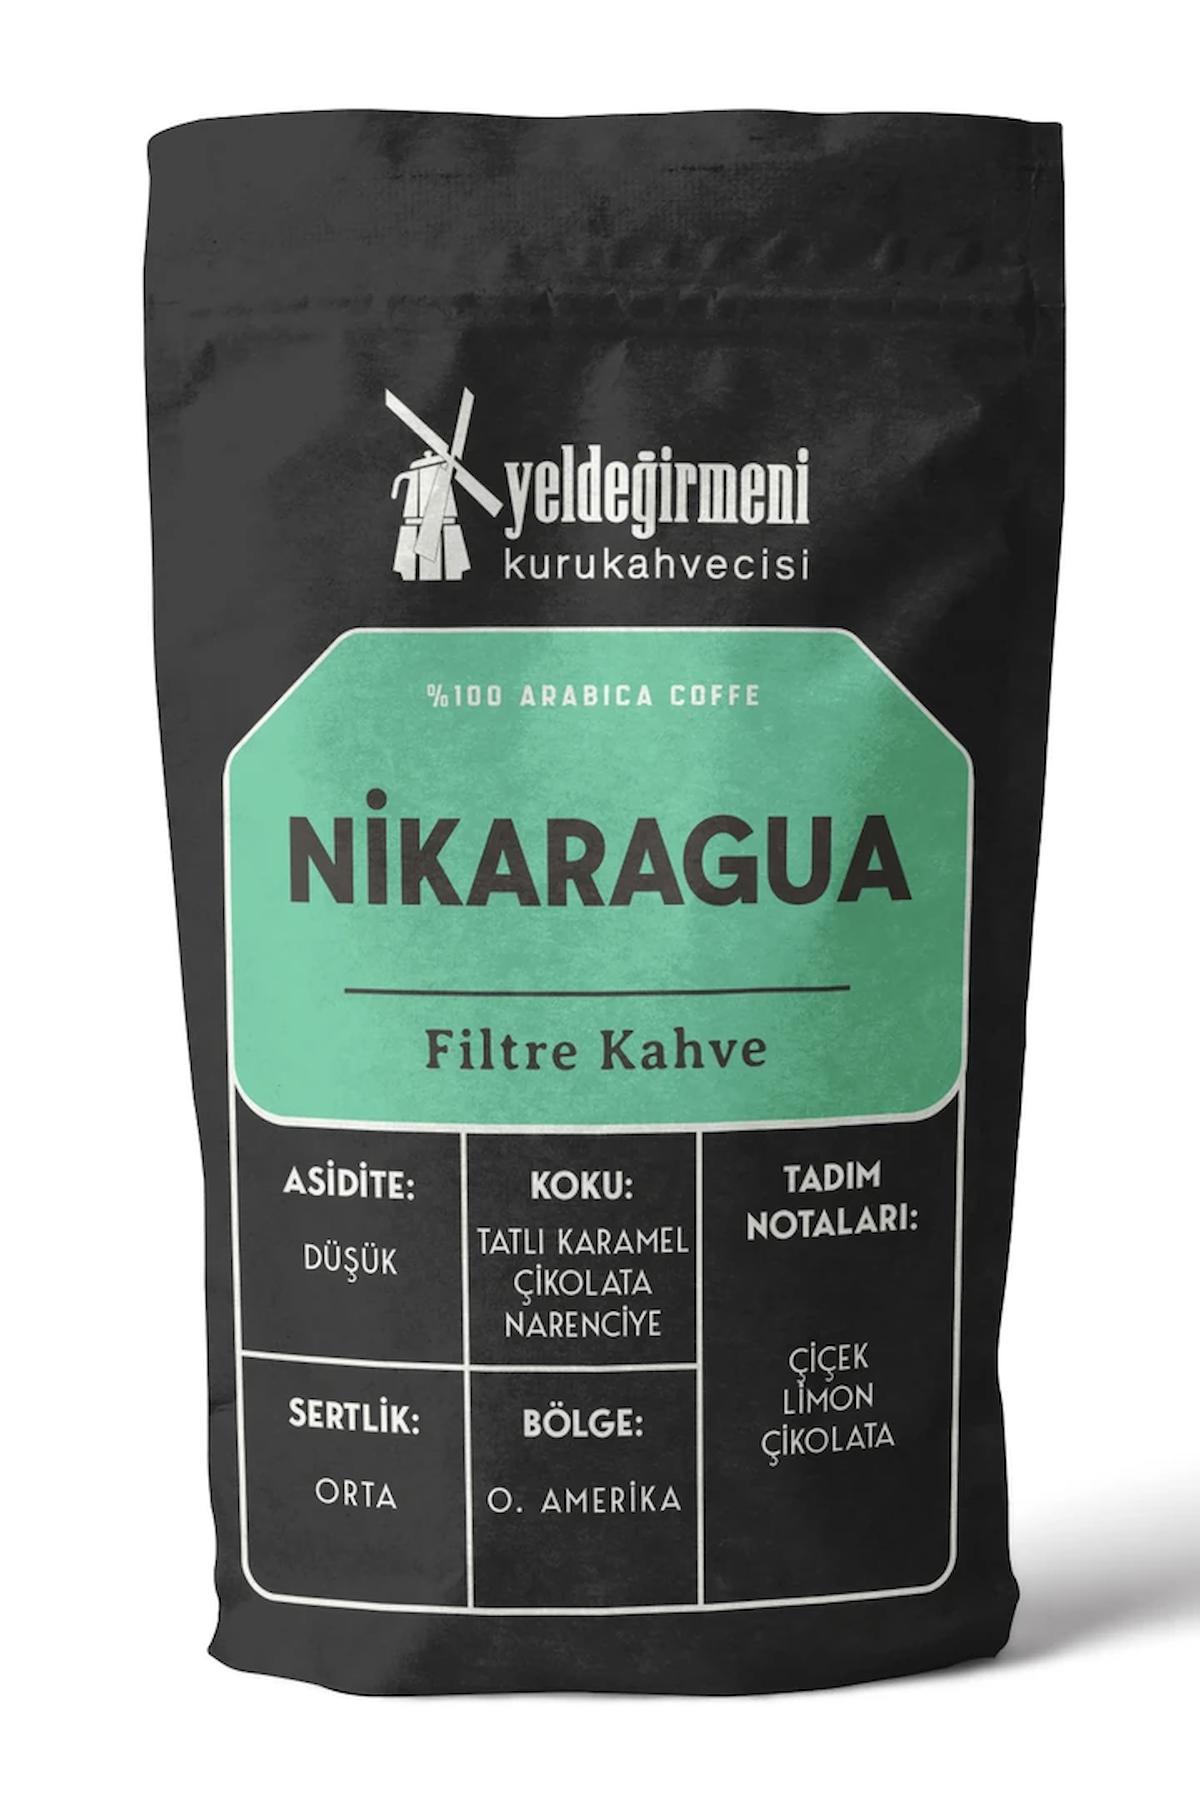 Yeldeğirmeni Kurukahvecisi Nikaragua Filtre Kahve 250 gr